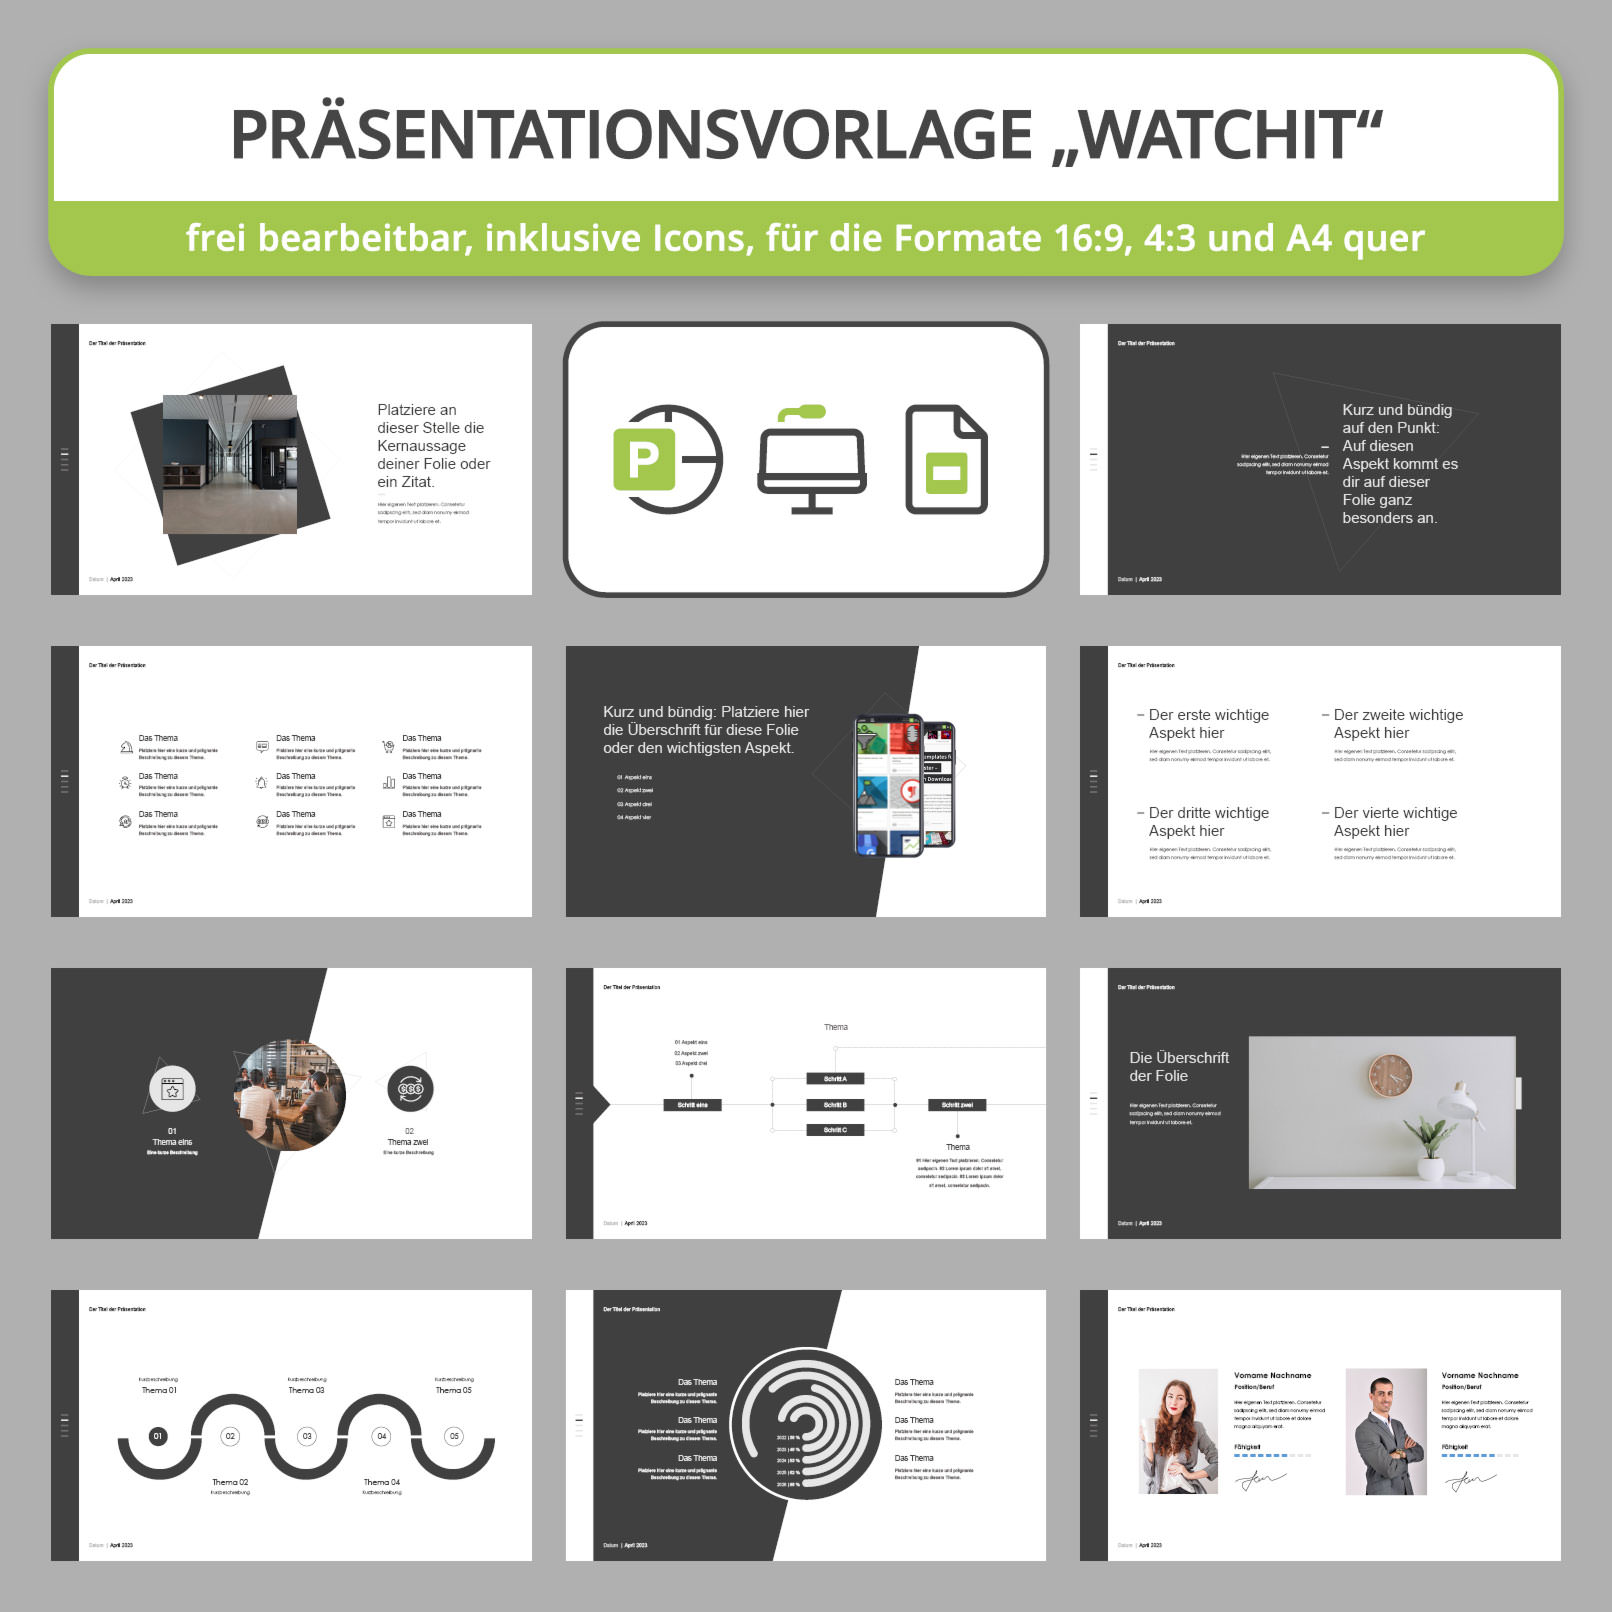 Vorschau auf Folien-Vorlagen im WatchIt-Design für PowerPoint, Google Slides und Keynote